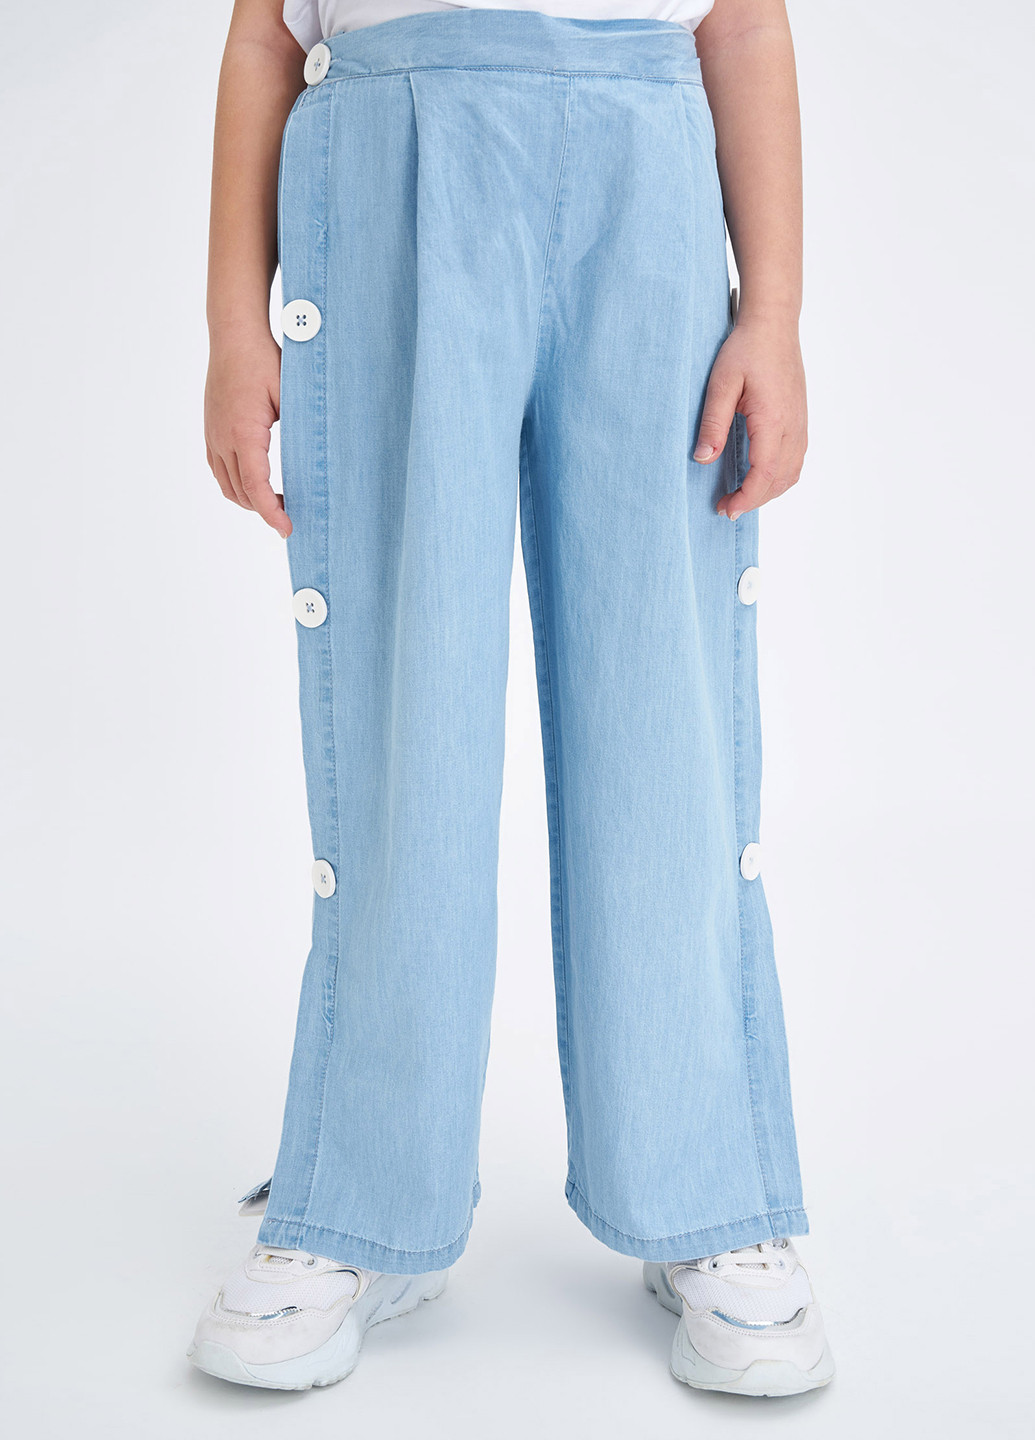 Голубые джинсовые демисезонные палаццо брюки DeFacto